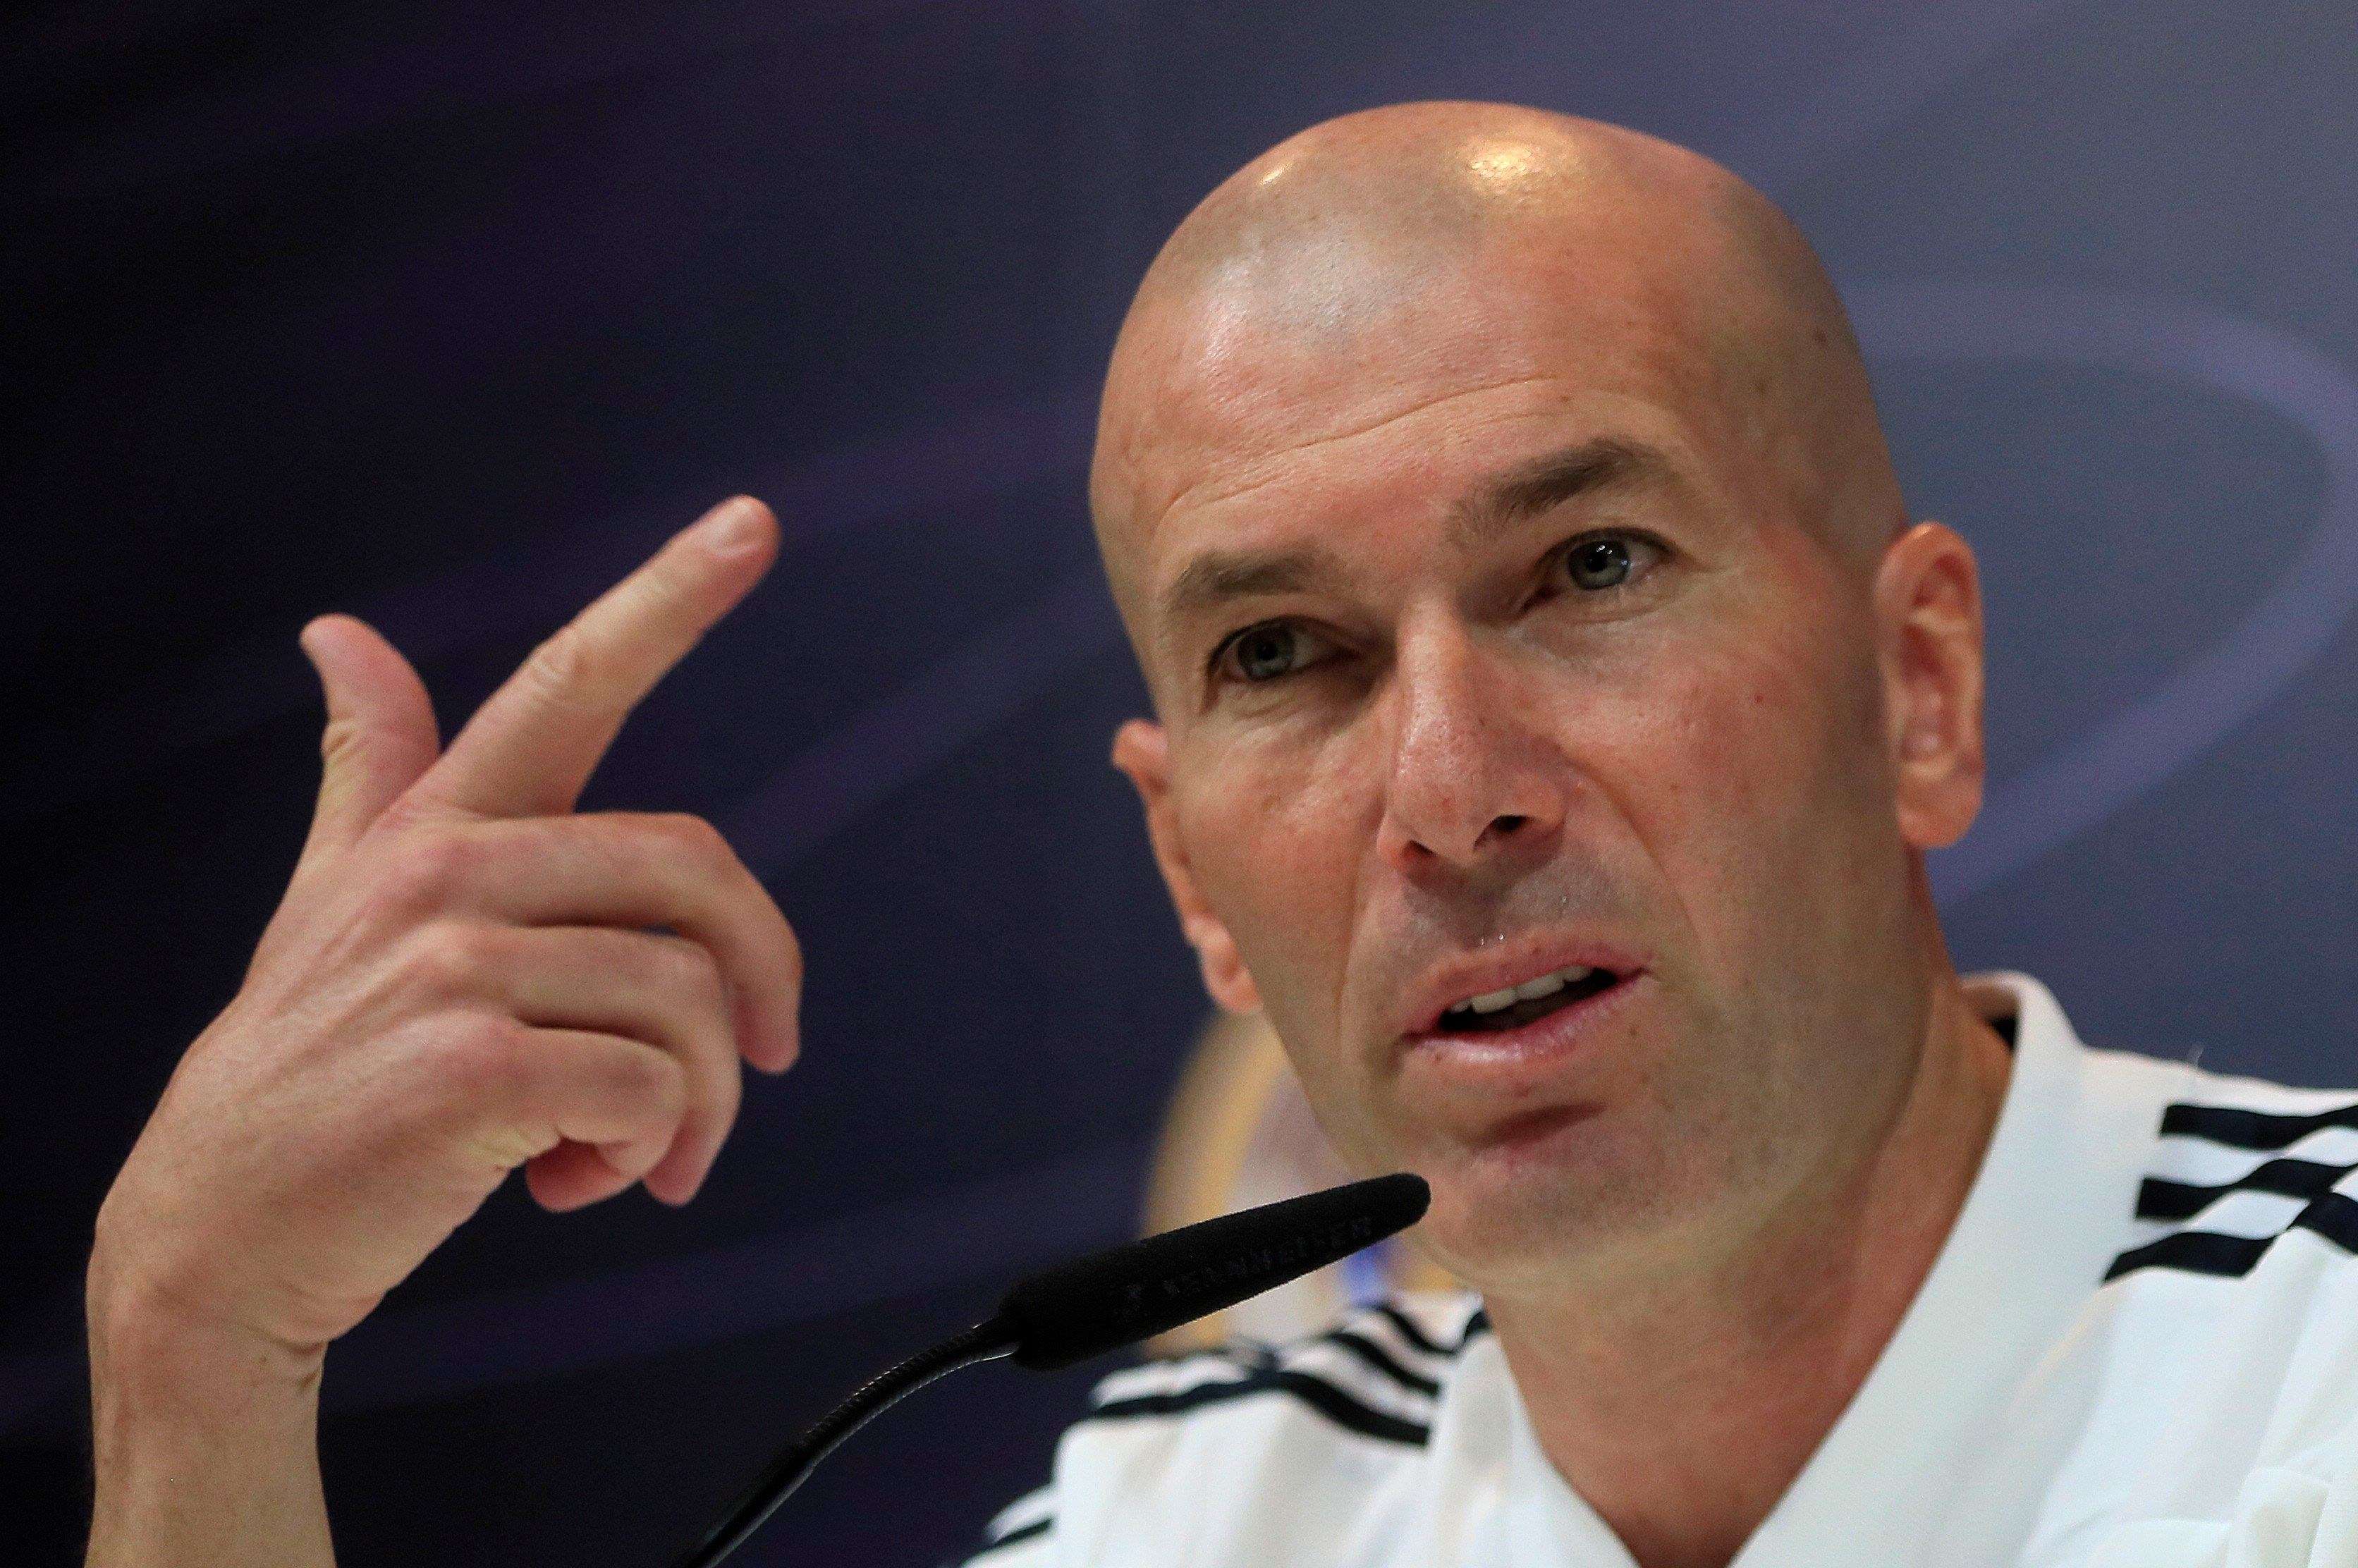 Zinedine Zidane durante la rueda de prensa de hoy. /EFE